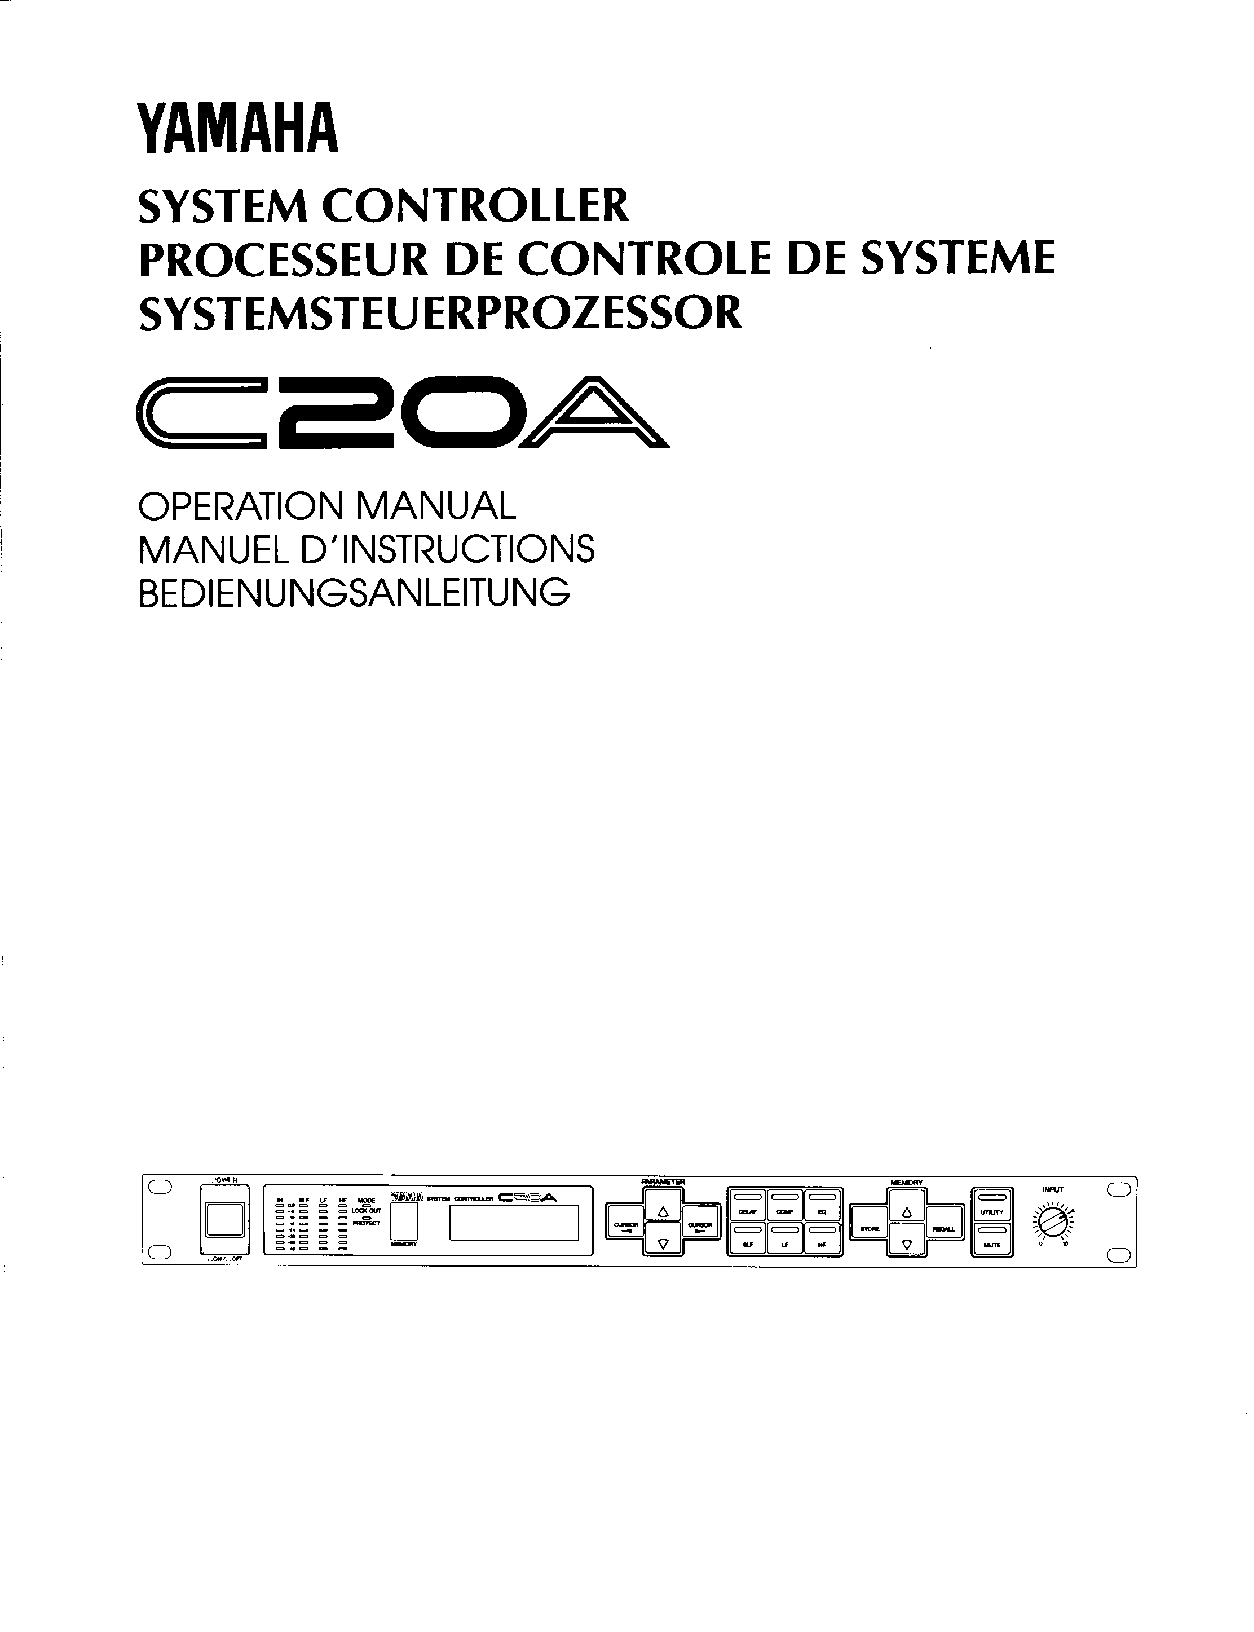 Yamaha C20A User Manual